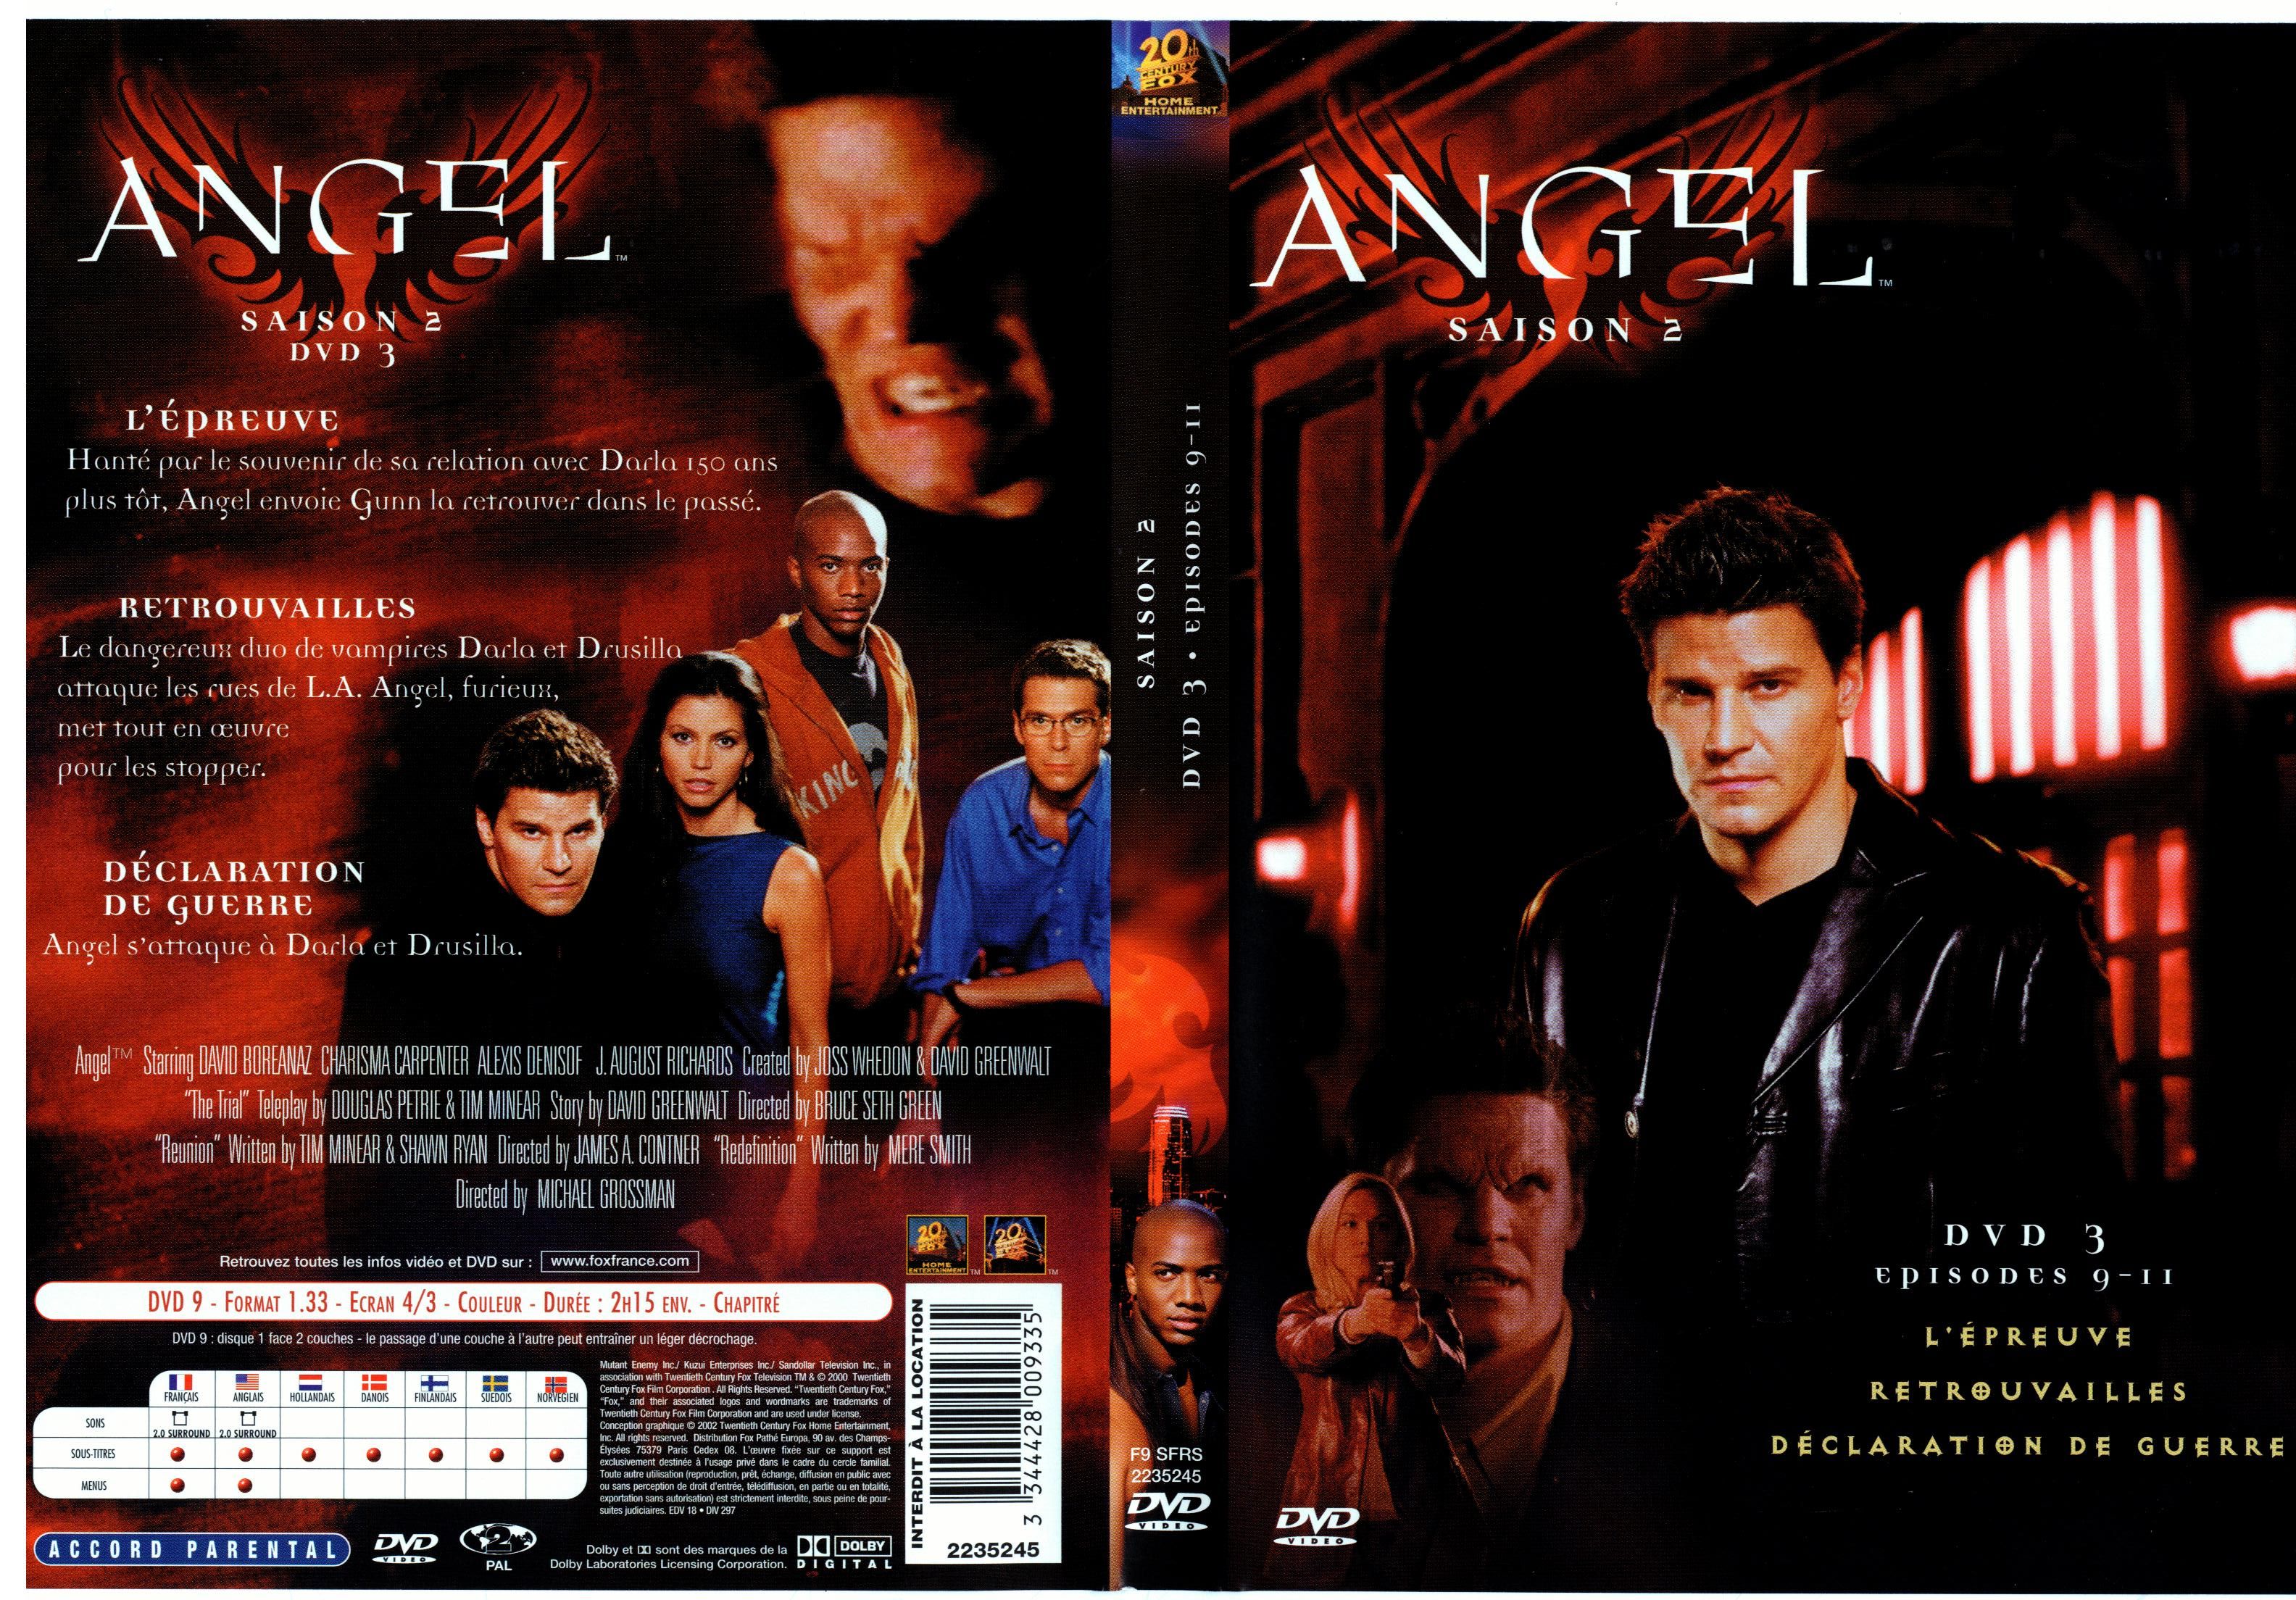 Jaquette DVD Angel Saison 2 dvd 3